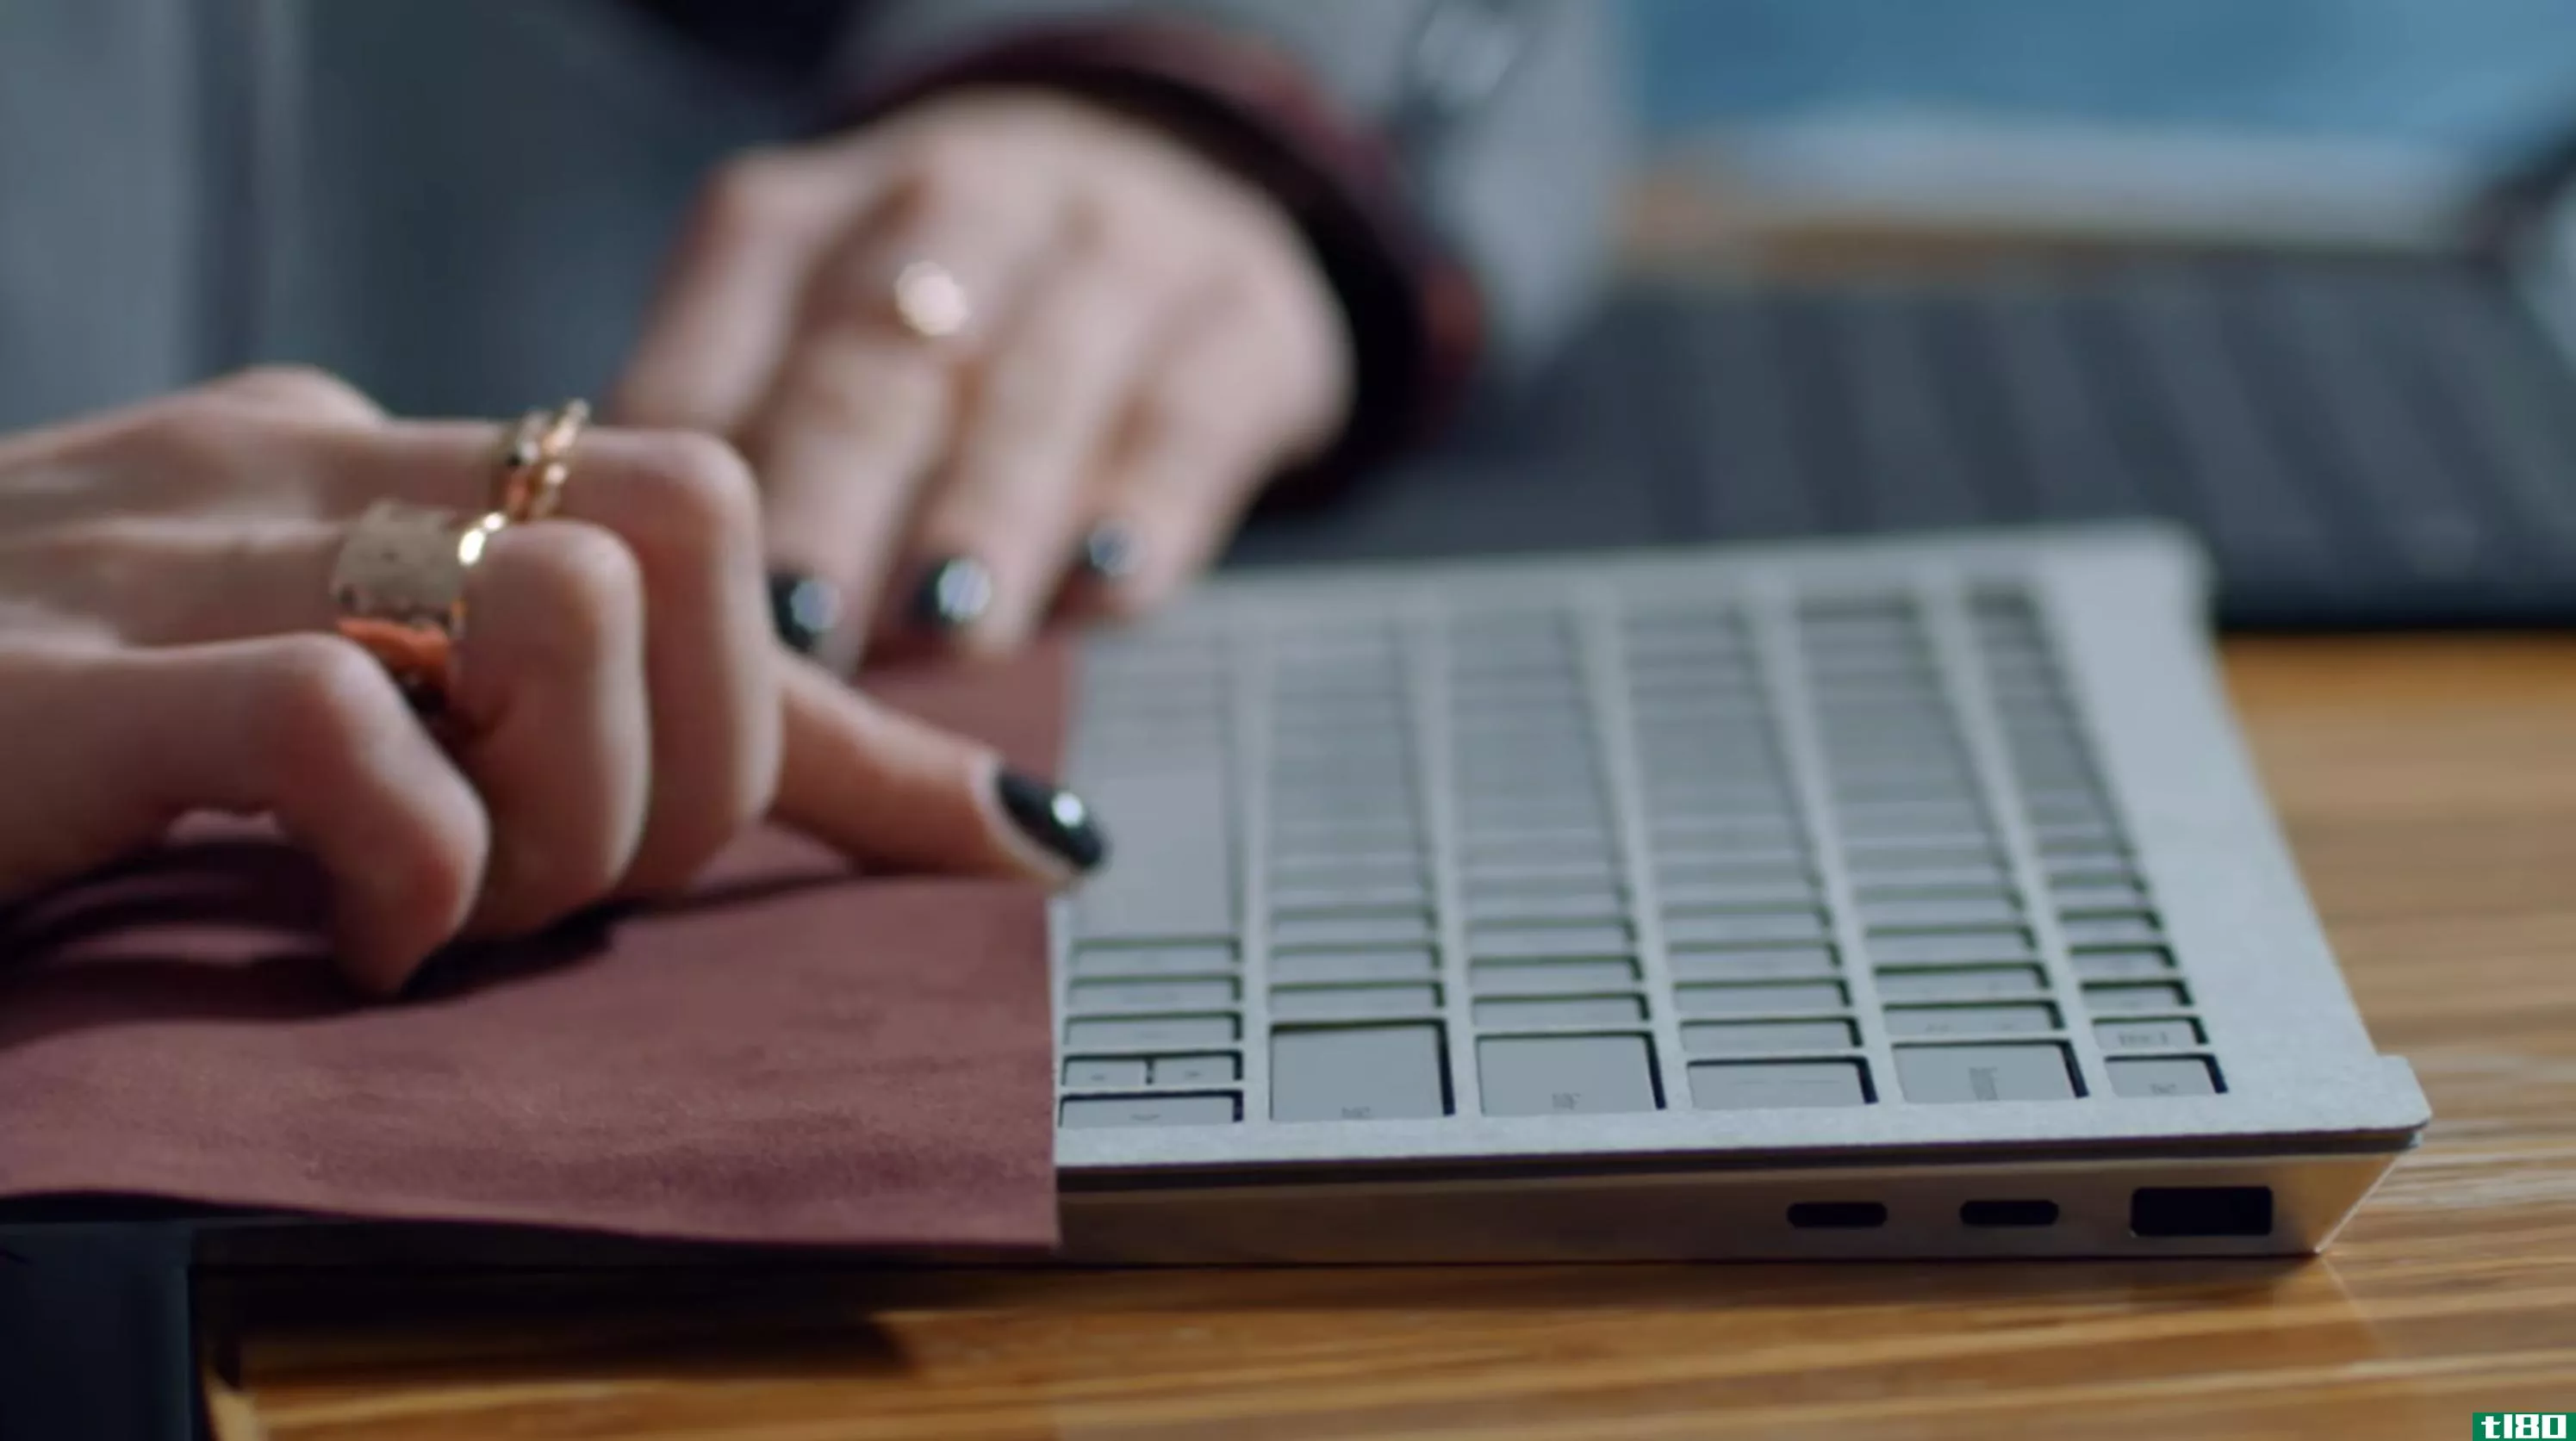 微软的surface笔记本电脑原型包括两个usb-c端口